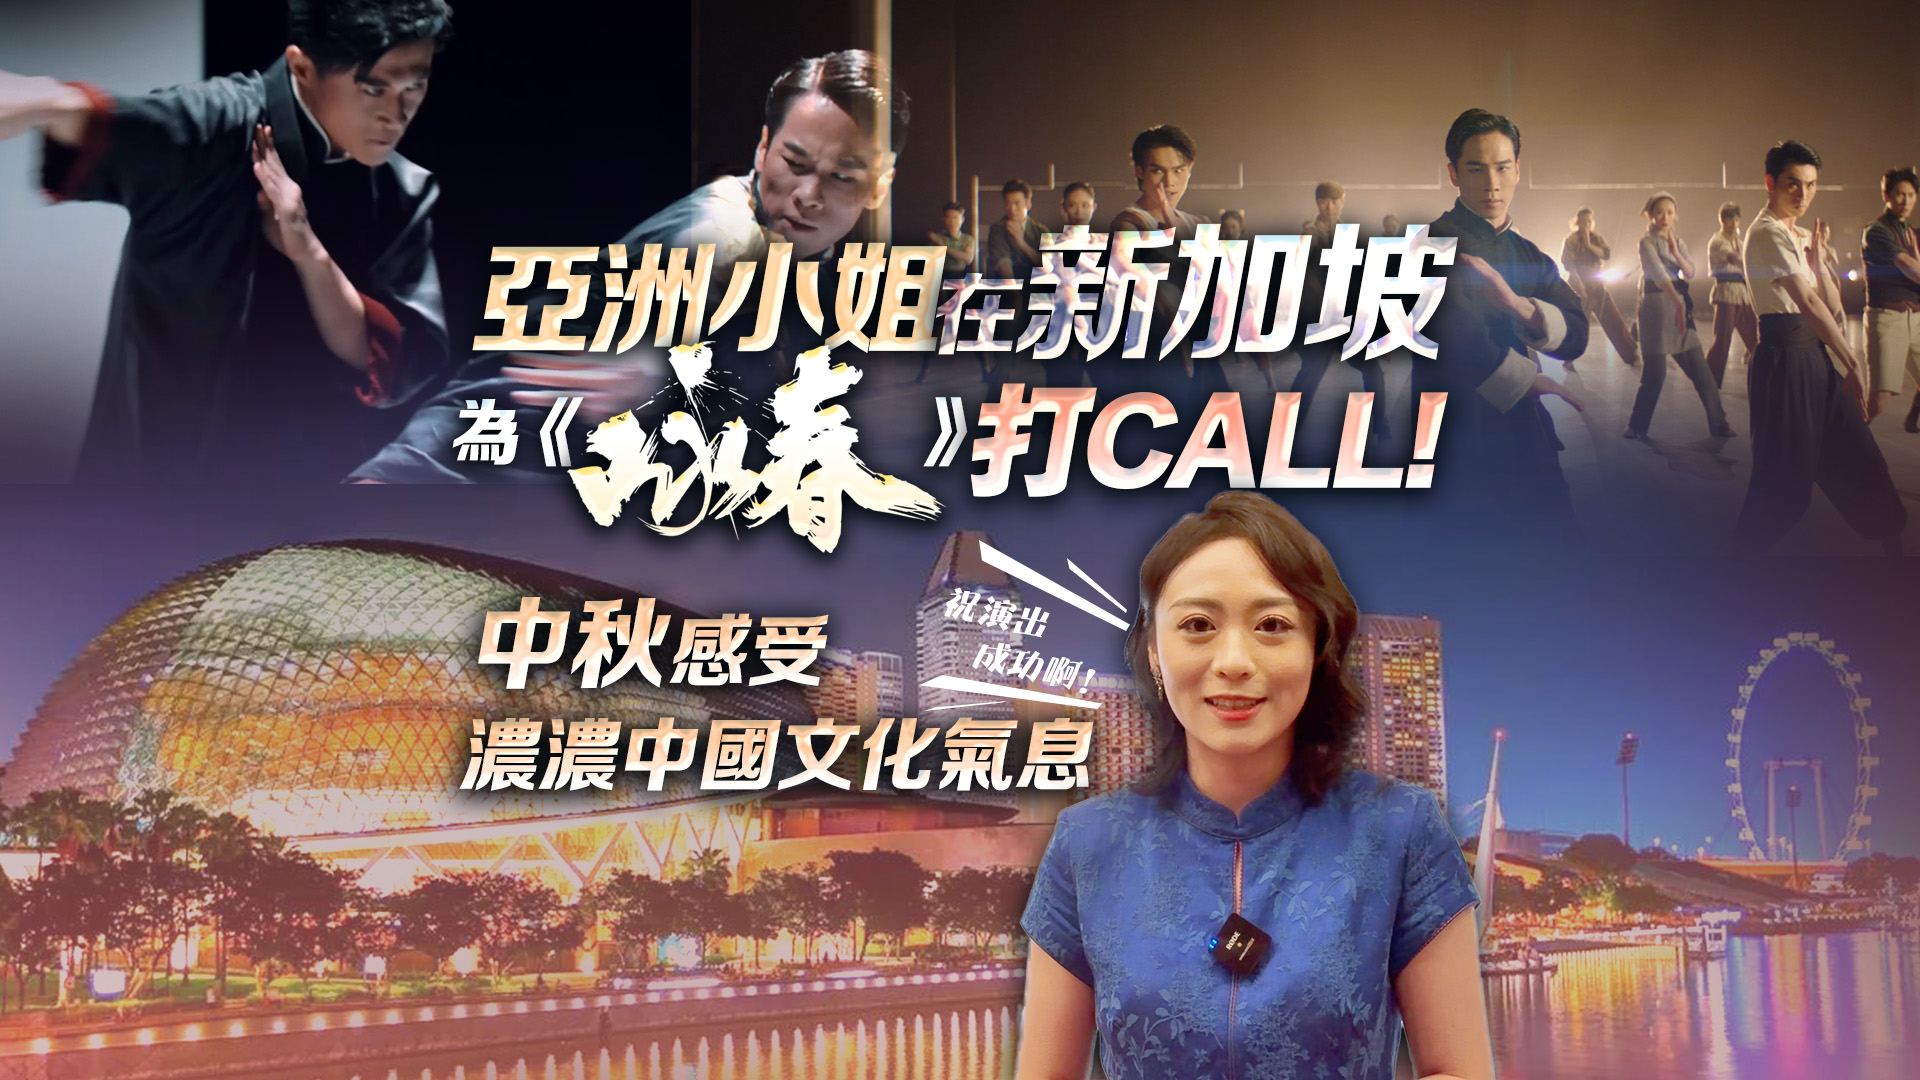 有片 | 亞洲小姐在新加坡為《詠春》打CALL!  中秋感受濃濃中國文化氣息